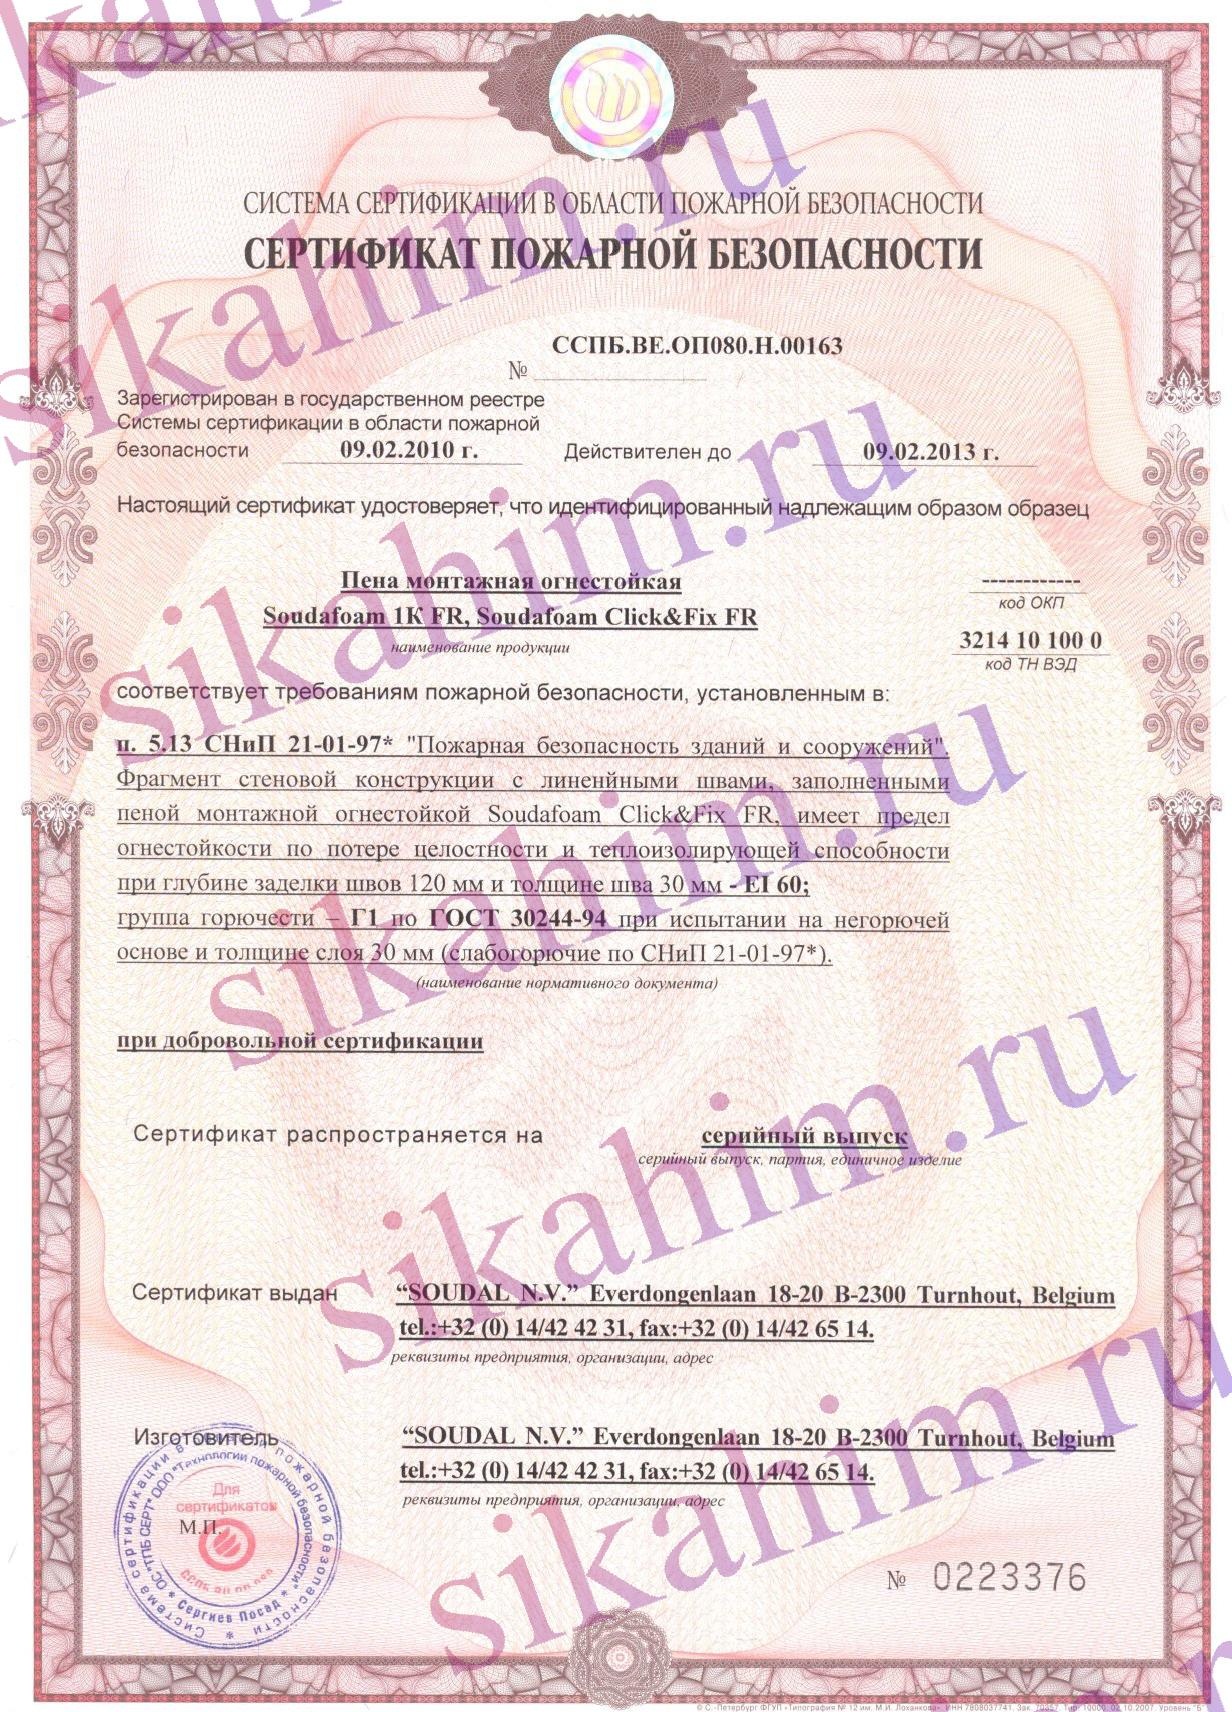 Сертификат на пену монтажную огнестойкую SOUDAFOAM FR